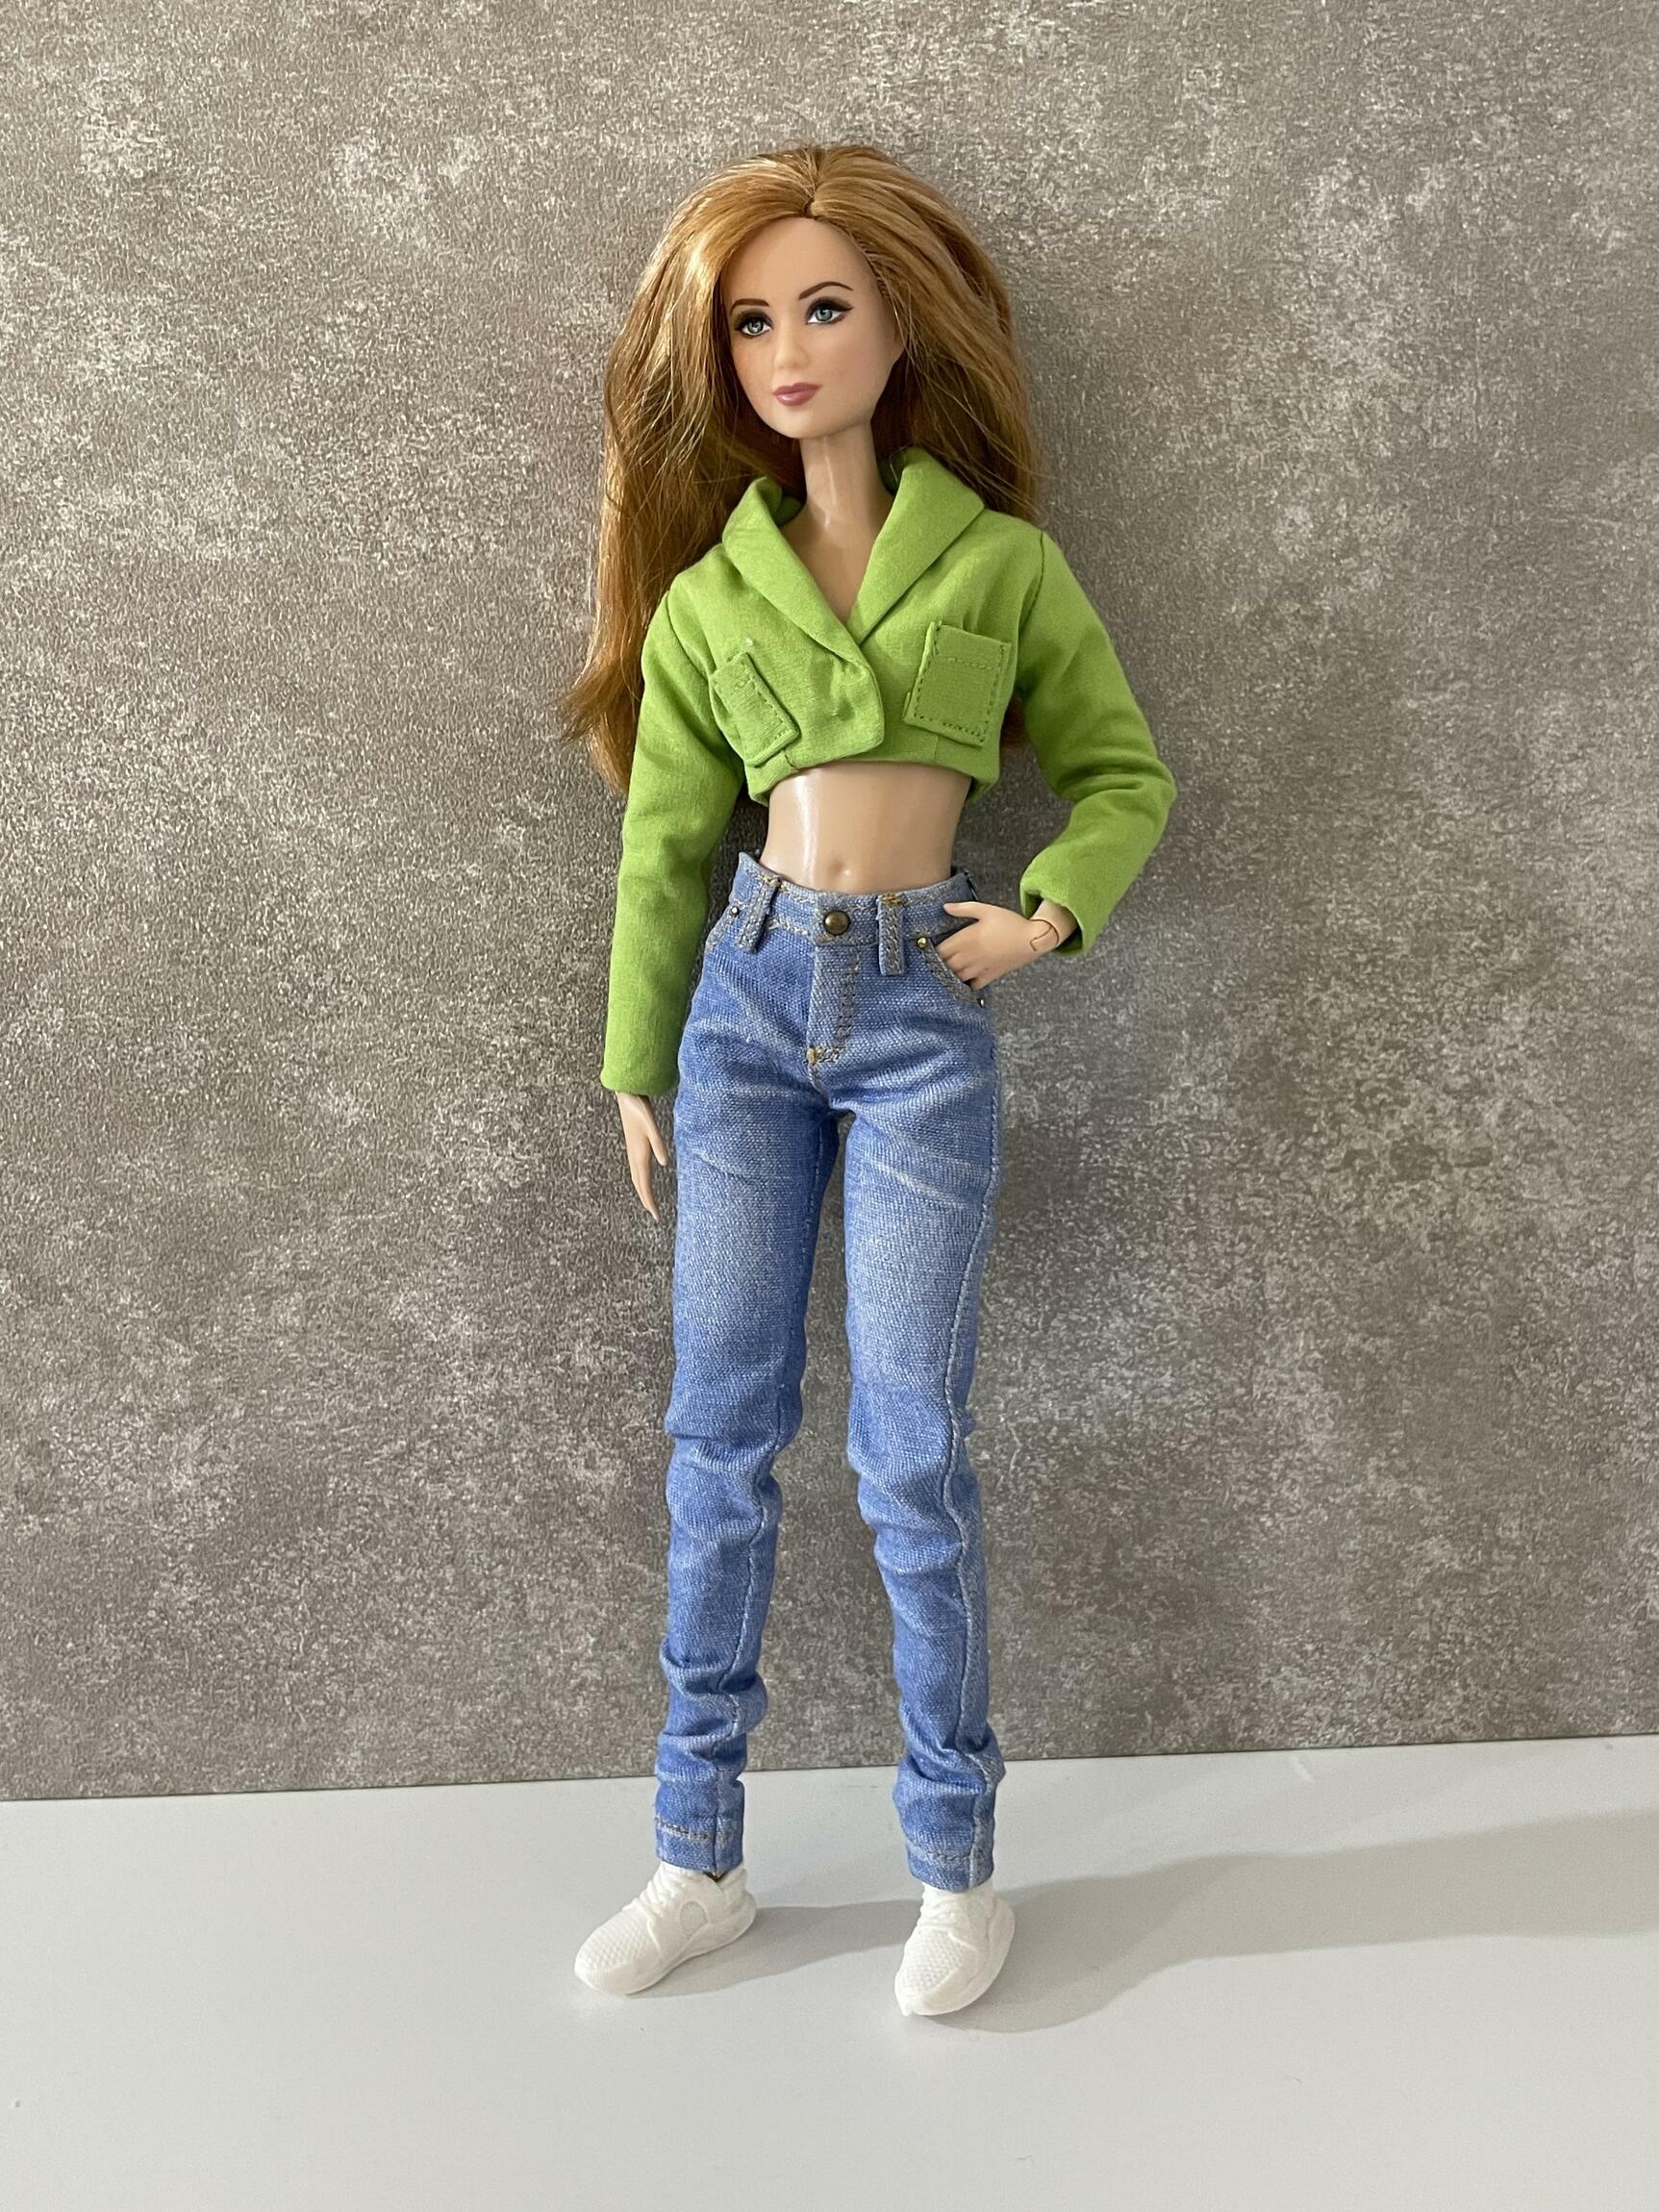 Comprar Calça jeans realista (Pré Venda) - a partir de R$99,00